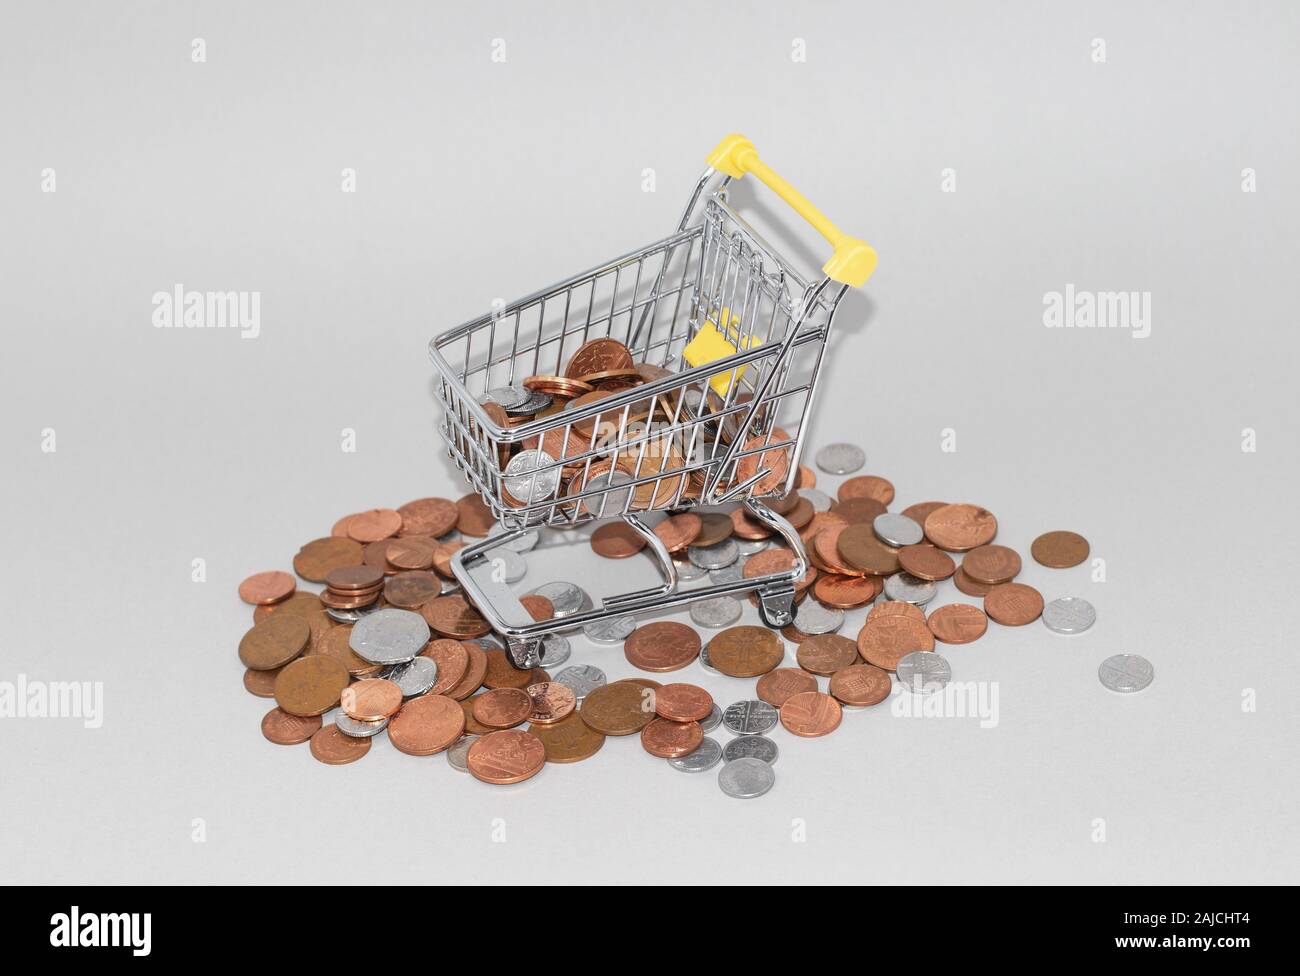 Carrito de compras carrito rodeado por cambio flojo, British penny monedas. Gastos innecesarios y el concepto del costo de la vida Foto de stock